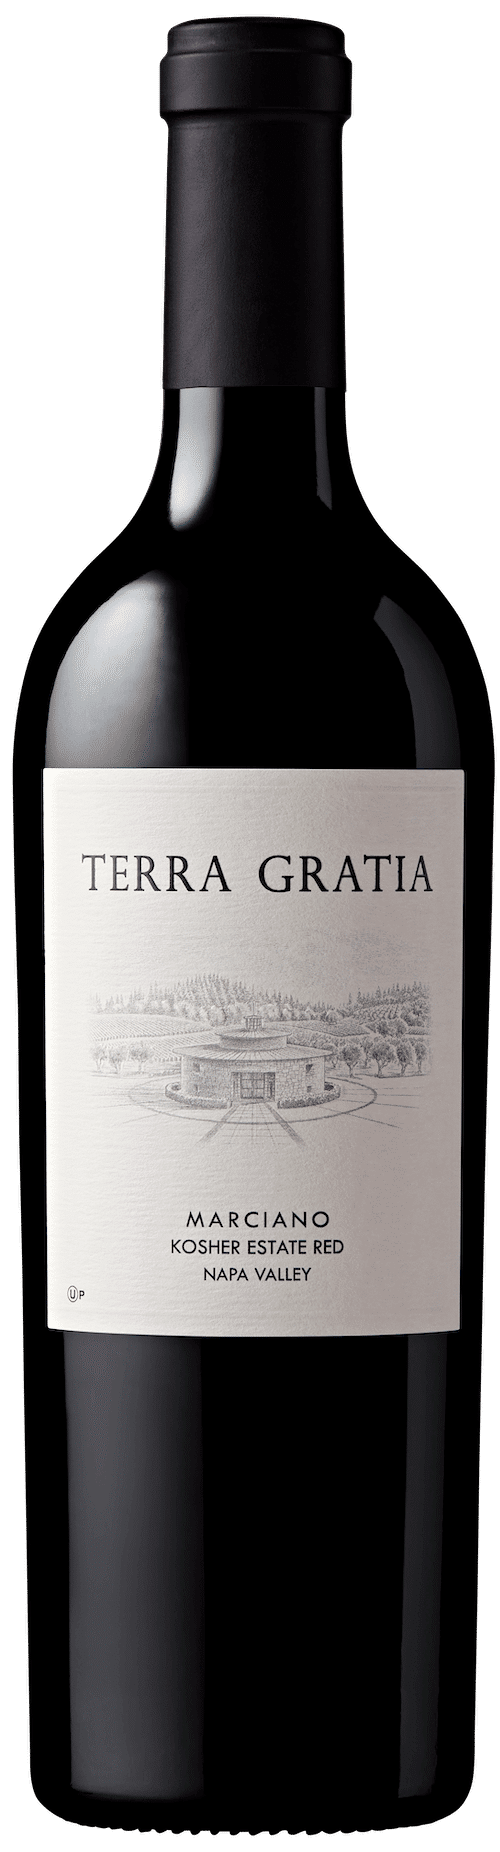 Terra gratia wine bottle shot